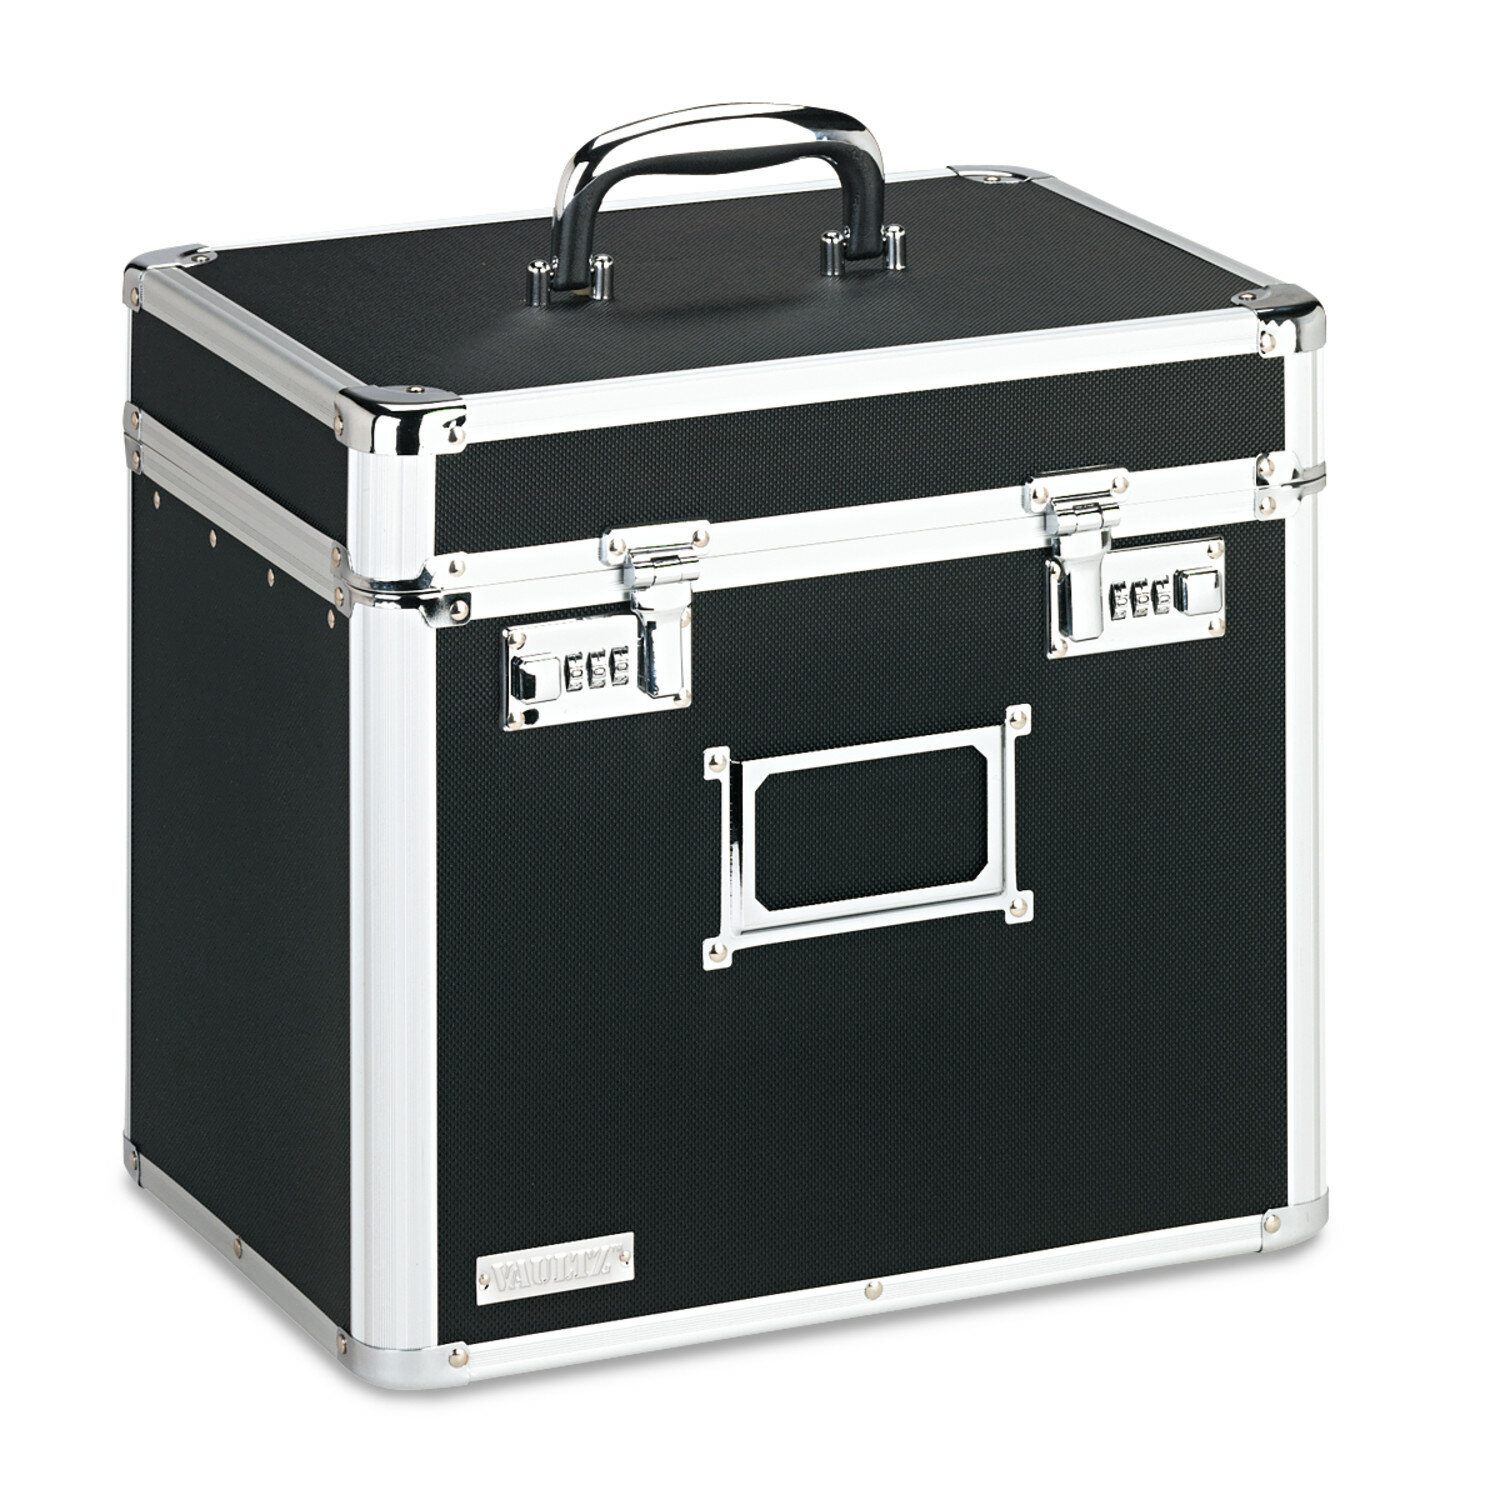 IdeaStream Metal Divided Storage Box 9 H x 8 W x 8 D Black